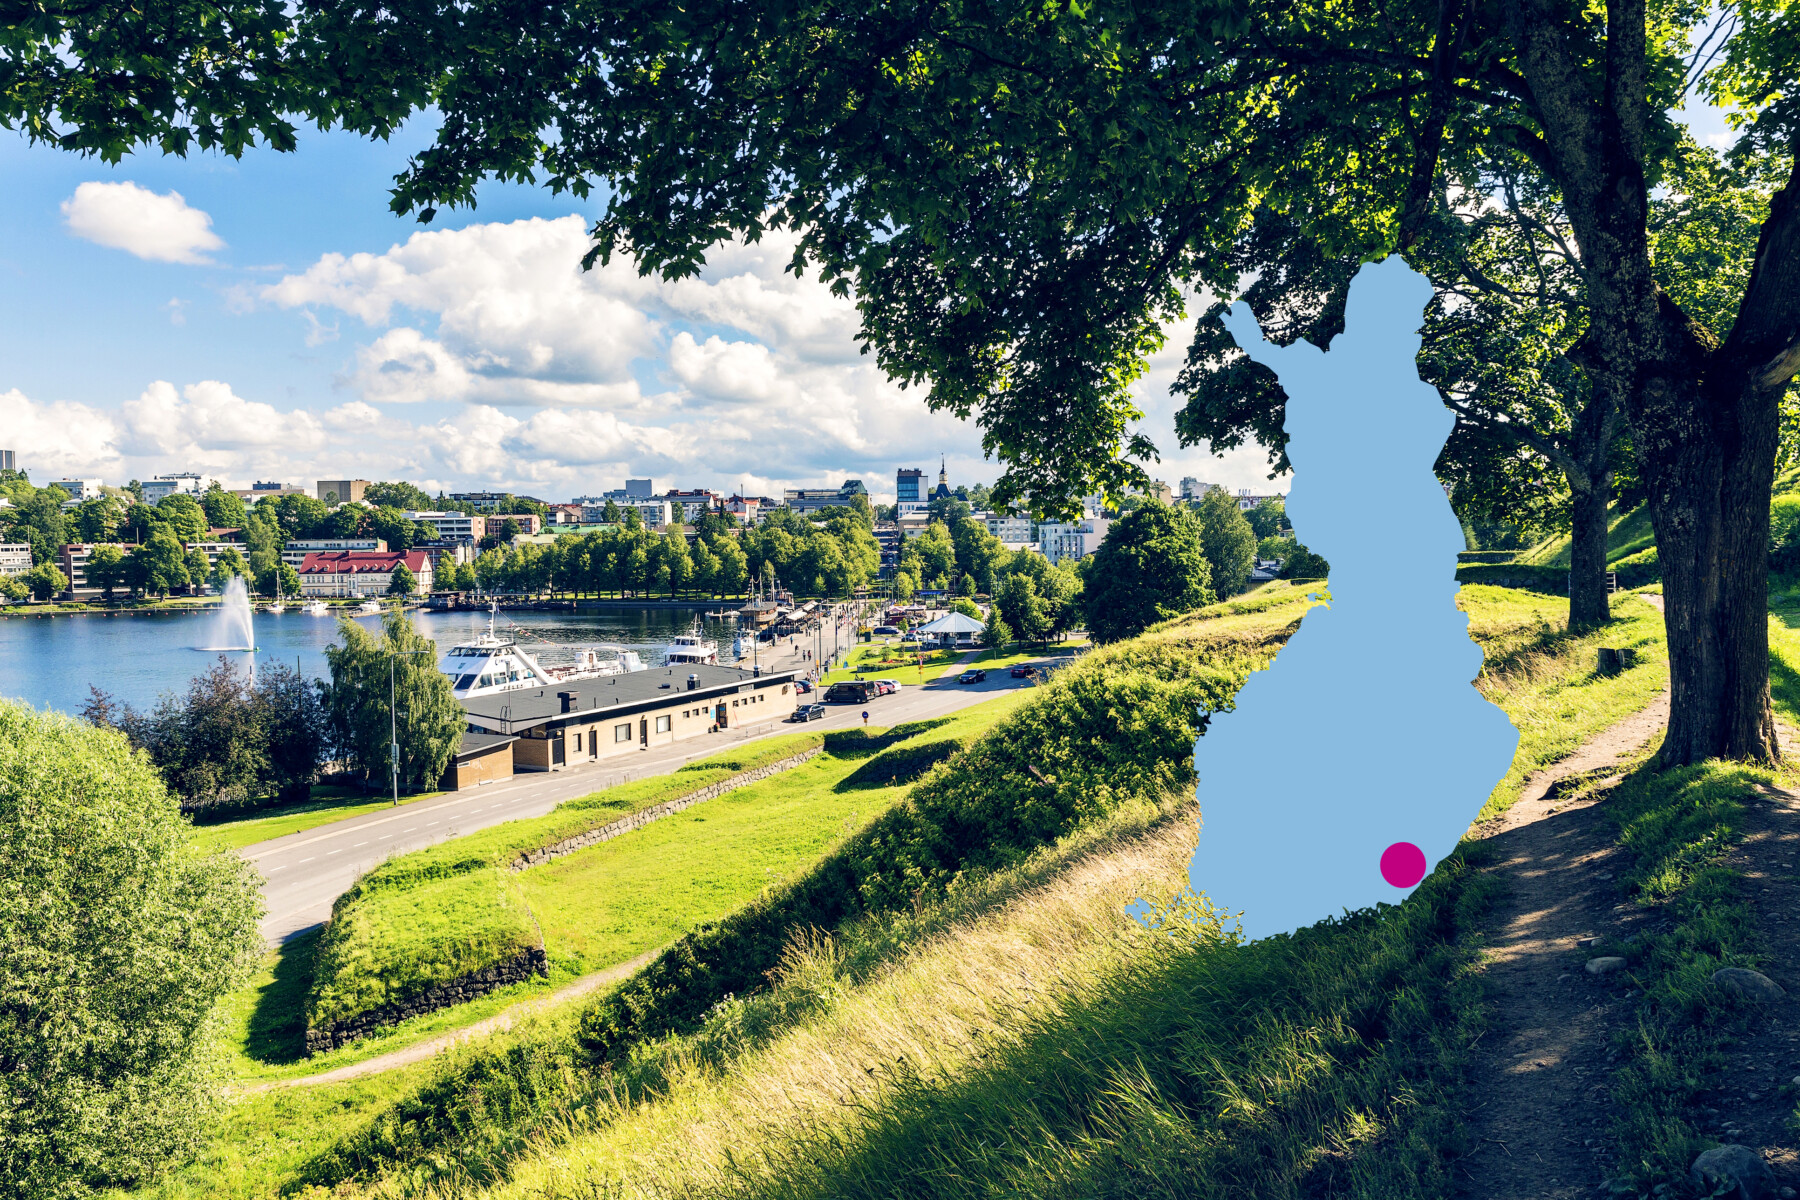 Вид на здания и гавань с высокого паркового холма с зелеными деревьями в городе Лаппеенранта на юго-востоке Финляндии на берегу озера Сайма (месторасположение города отмечено красной точкой на голубом силуэте карты Финляндии).